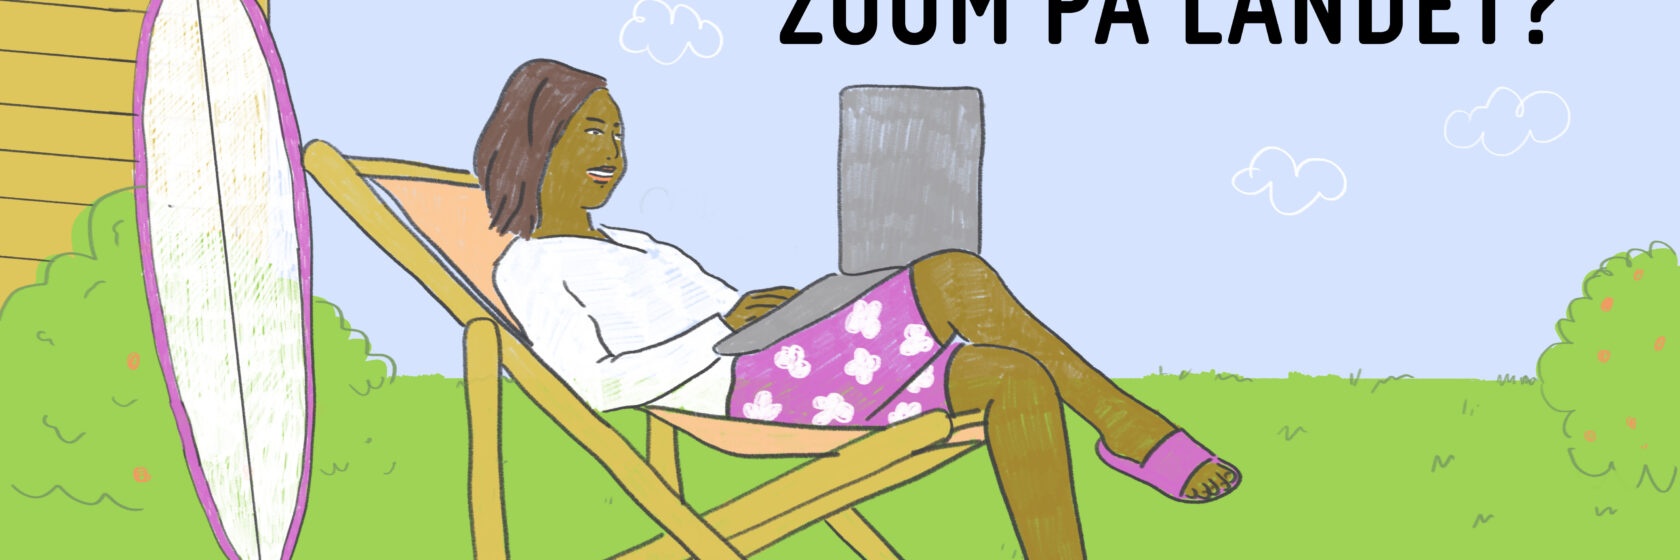 Invitasjon til frokostseminar, illustrasjon av dame som sitter i en strandstol og jobber på laptop, mens surfebrettet står lent mot en hytte vegg. Det er grønt gress og blå himmel.